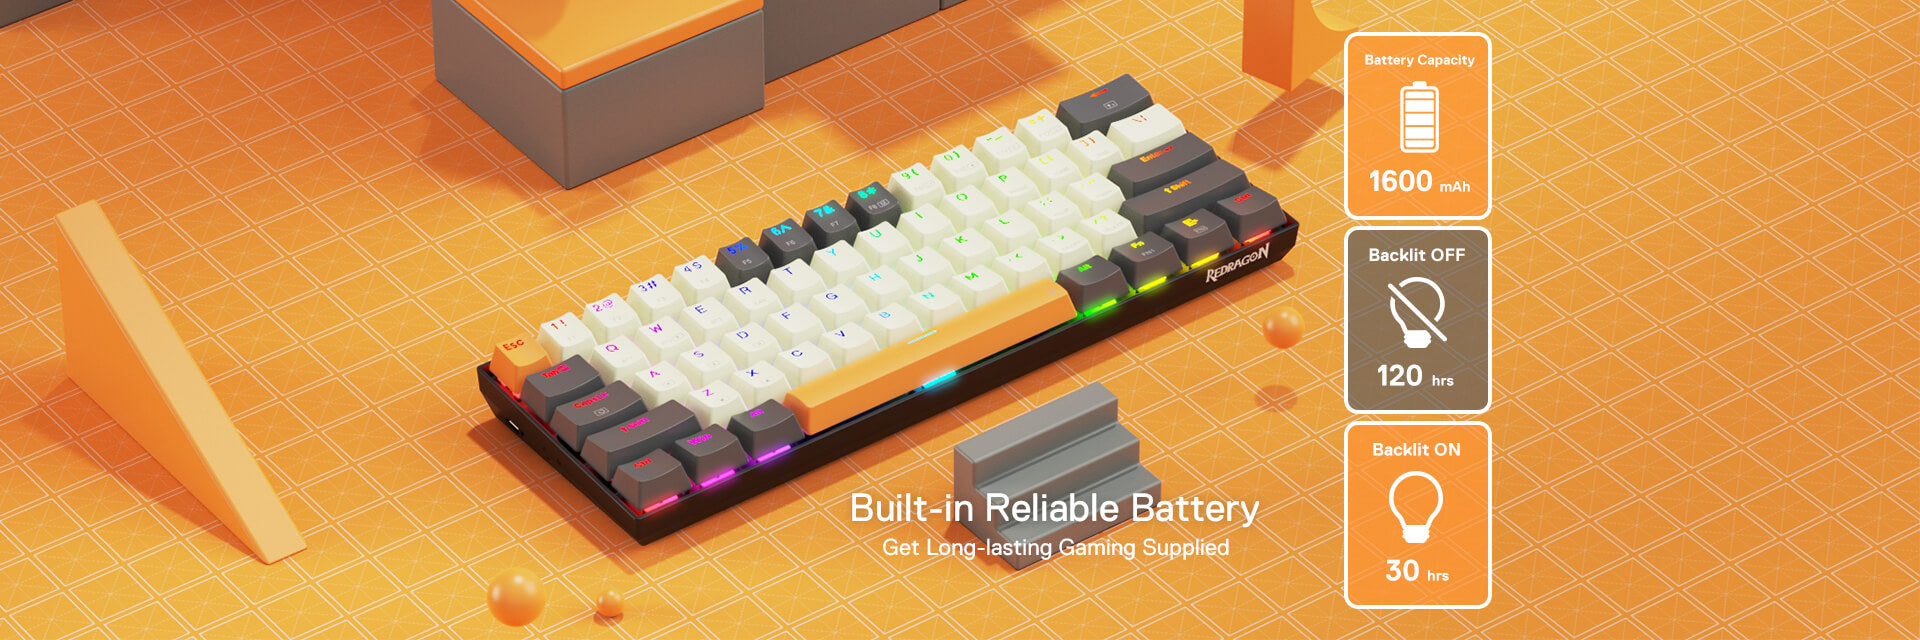 Redragon K644 SE 65% 3-Mode Wireless RGB Gaming Keyboard